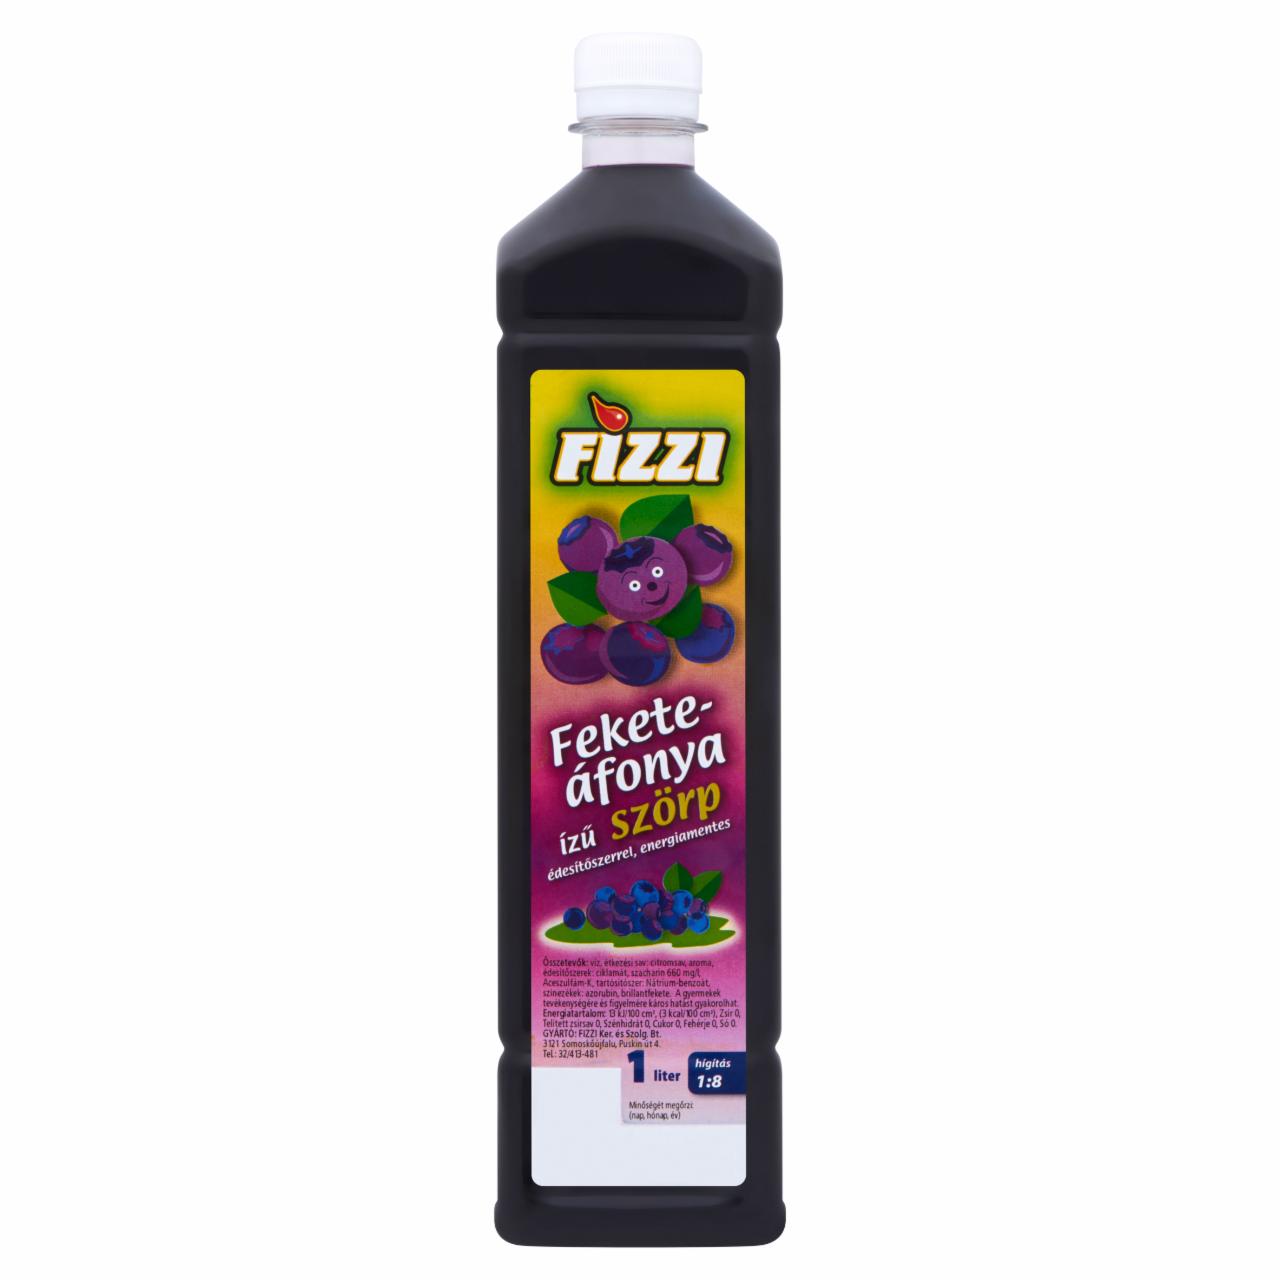 Képek - Fizzi energiamentes feketeáfonya ízű szörp édesítőszerrel 1 l